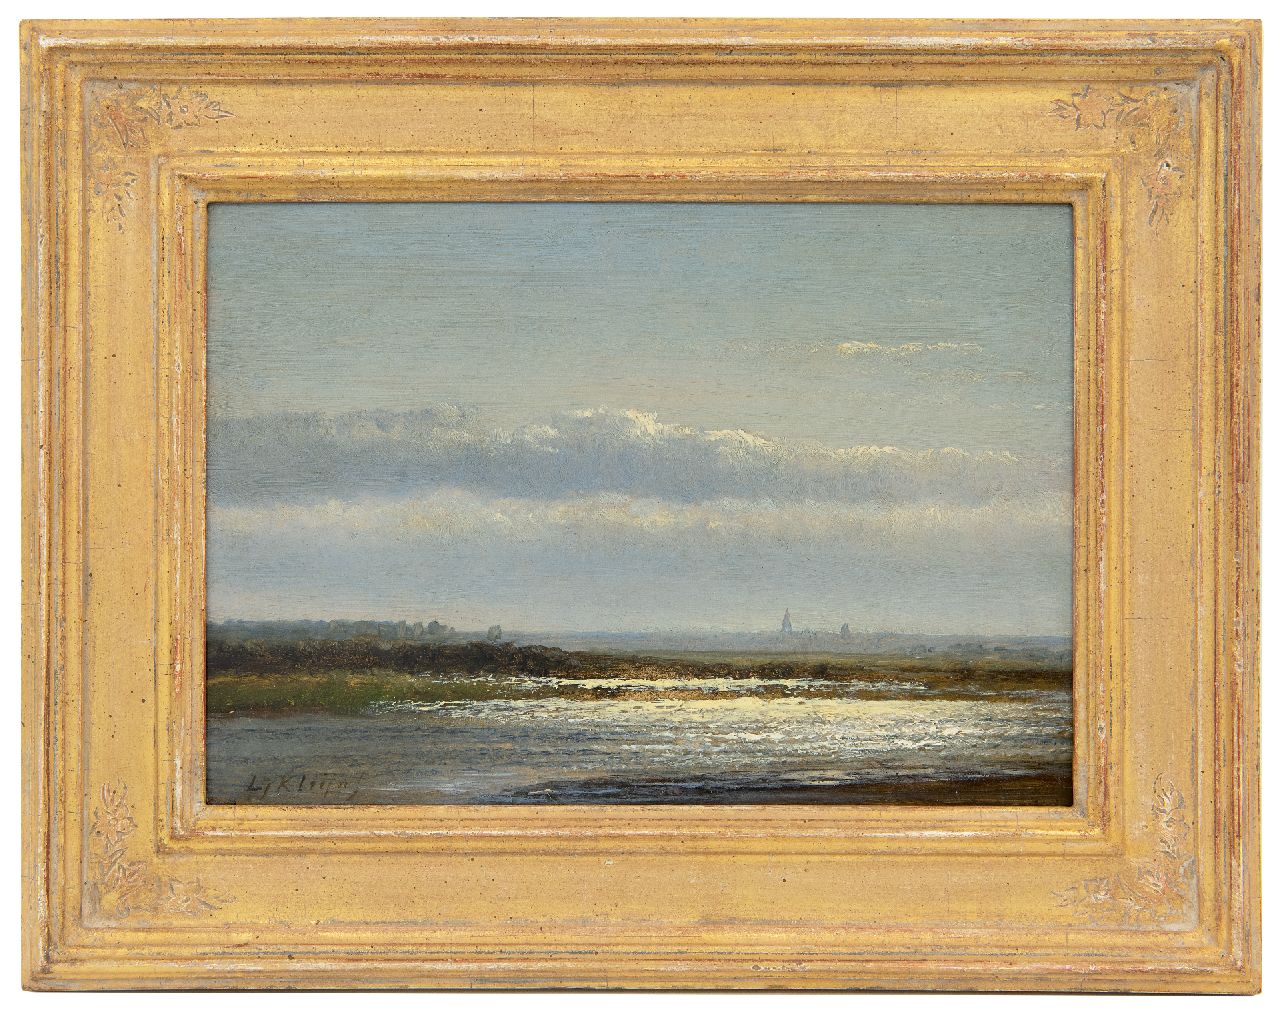 Kleijn L.J.  | Lodewijk Johannes Kleijn | Schilderijen te koop aangeboden | Lichteffect op de rivier, olieverf op paneel 17,2 x 24,2 cm, gesigneerd linksonder